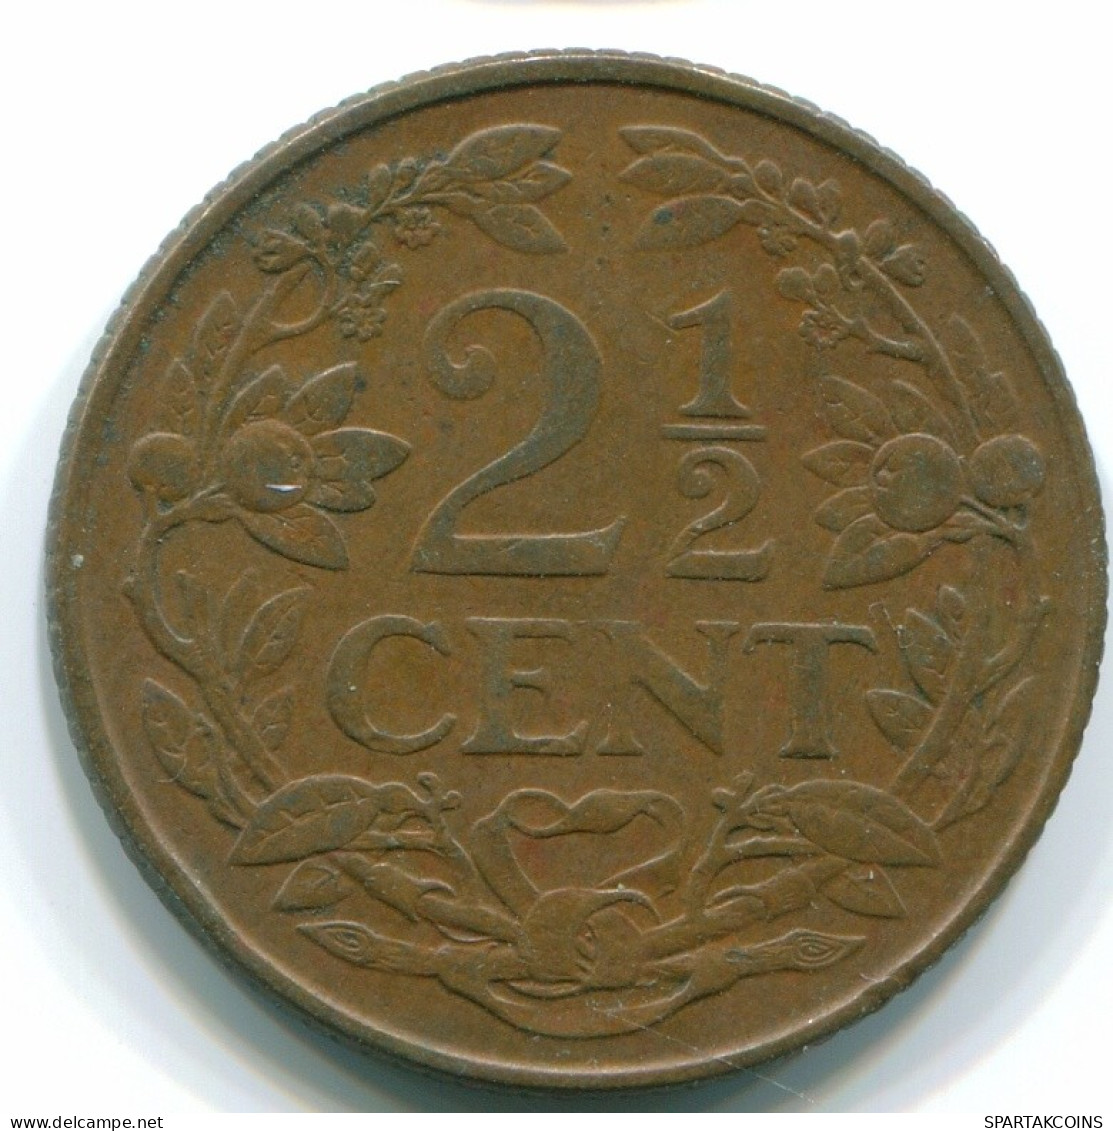 2 1/2 CENT 1956 CURACAO NIEDERLANDE Bronze Koloniale Münze #S10186.D.A - Curacao